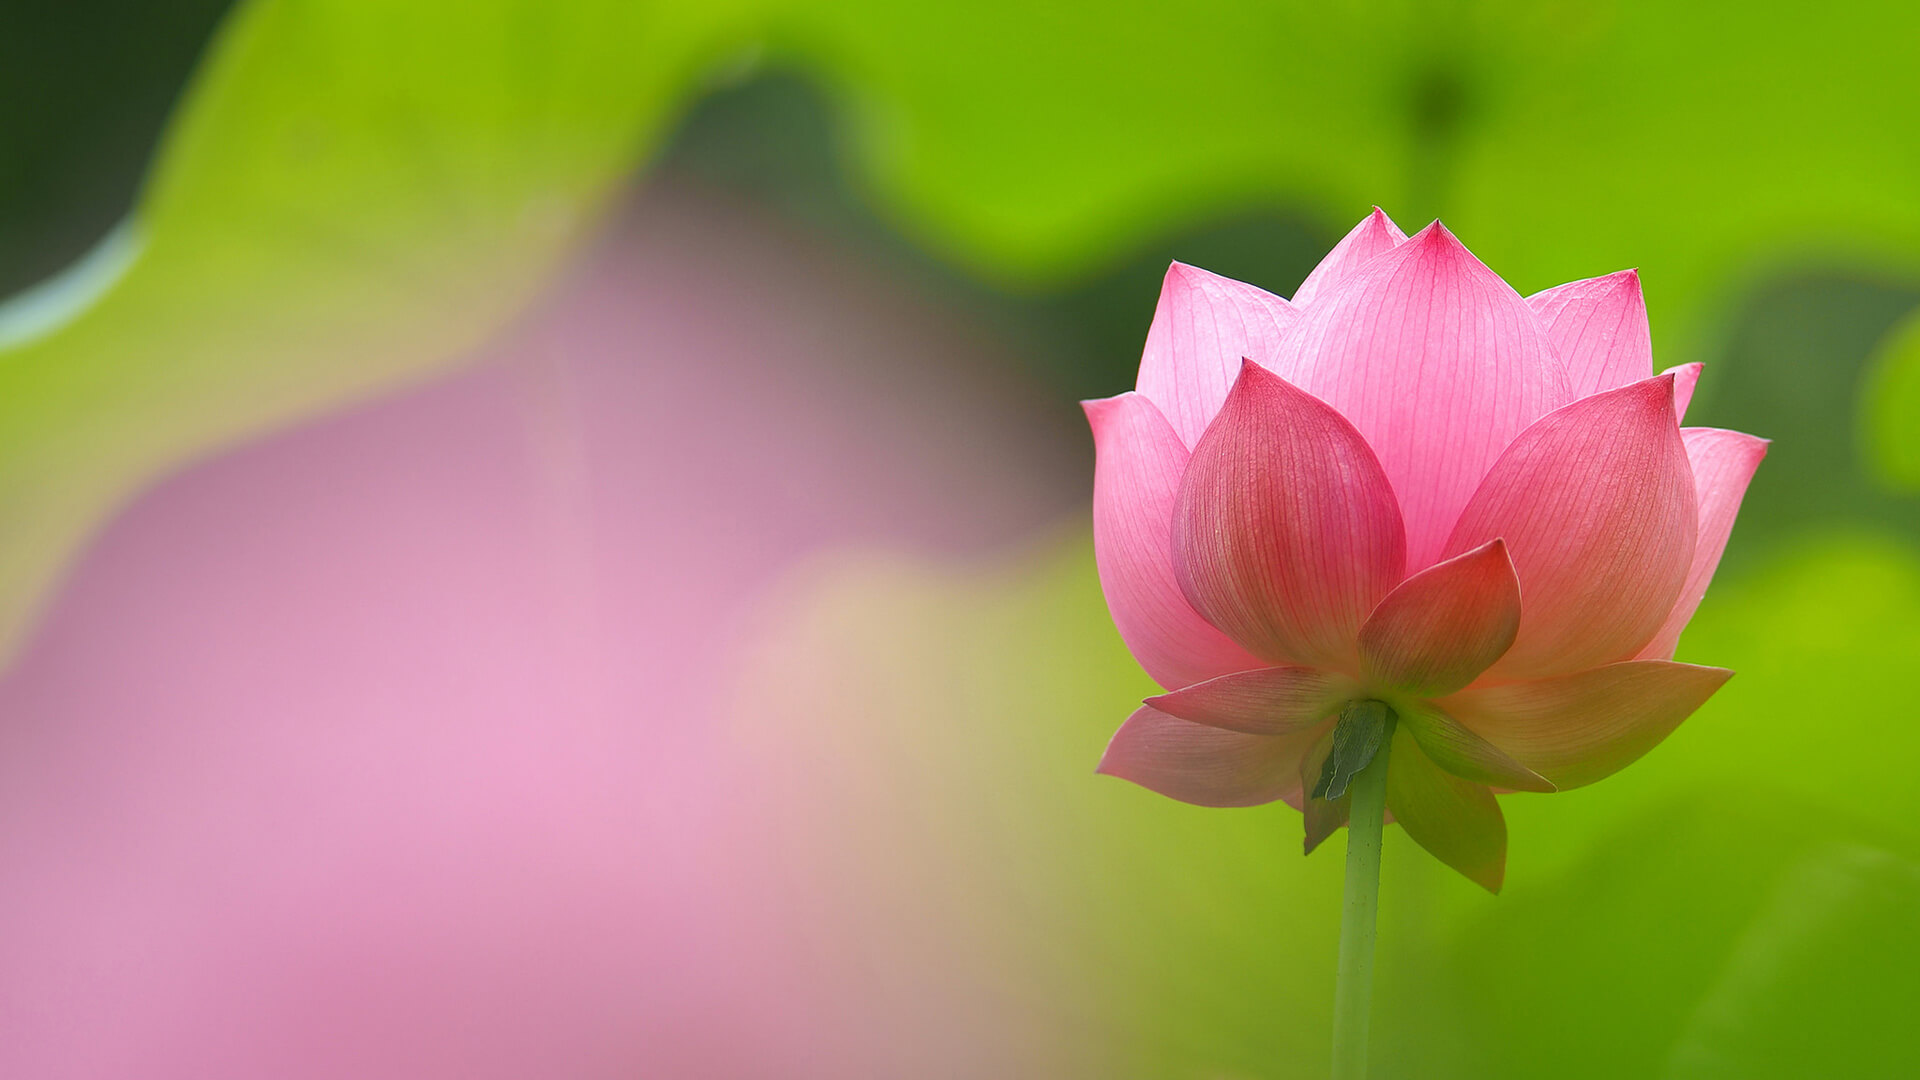 Hình nền 3D  Ngỡ ngàng hoa sen phát sáng  Lotus flower wallpaper White  lotus flower Flower wallpaper